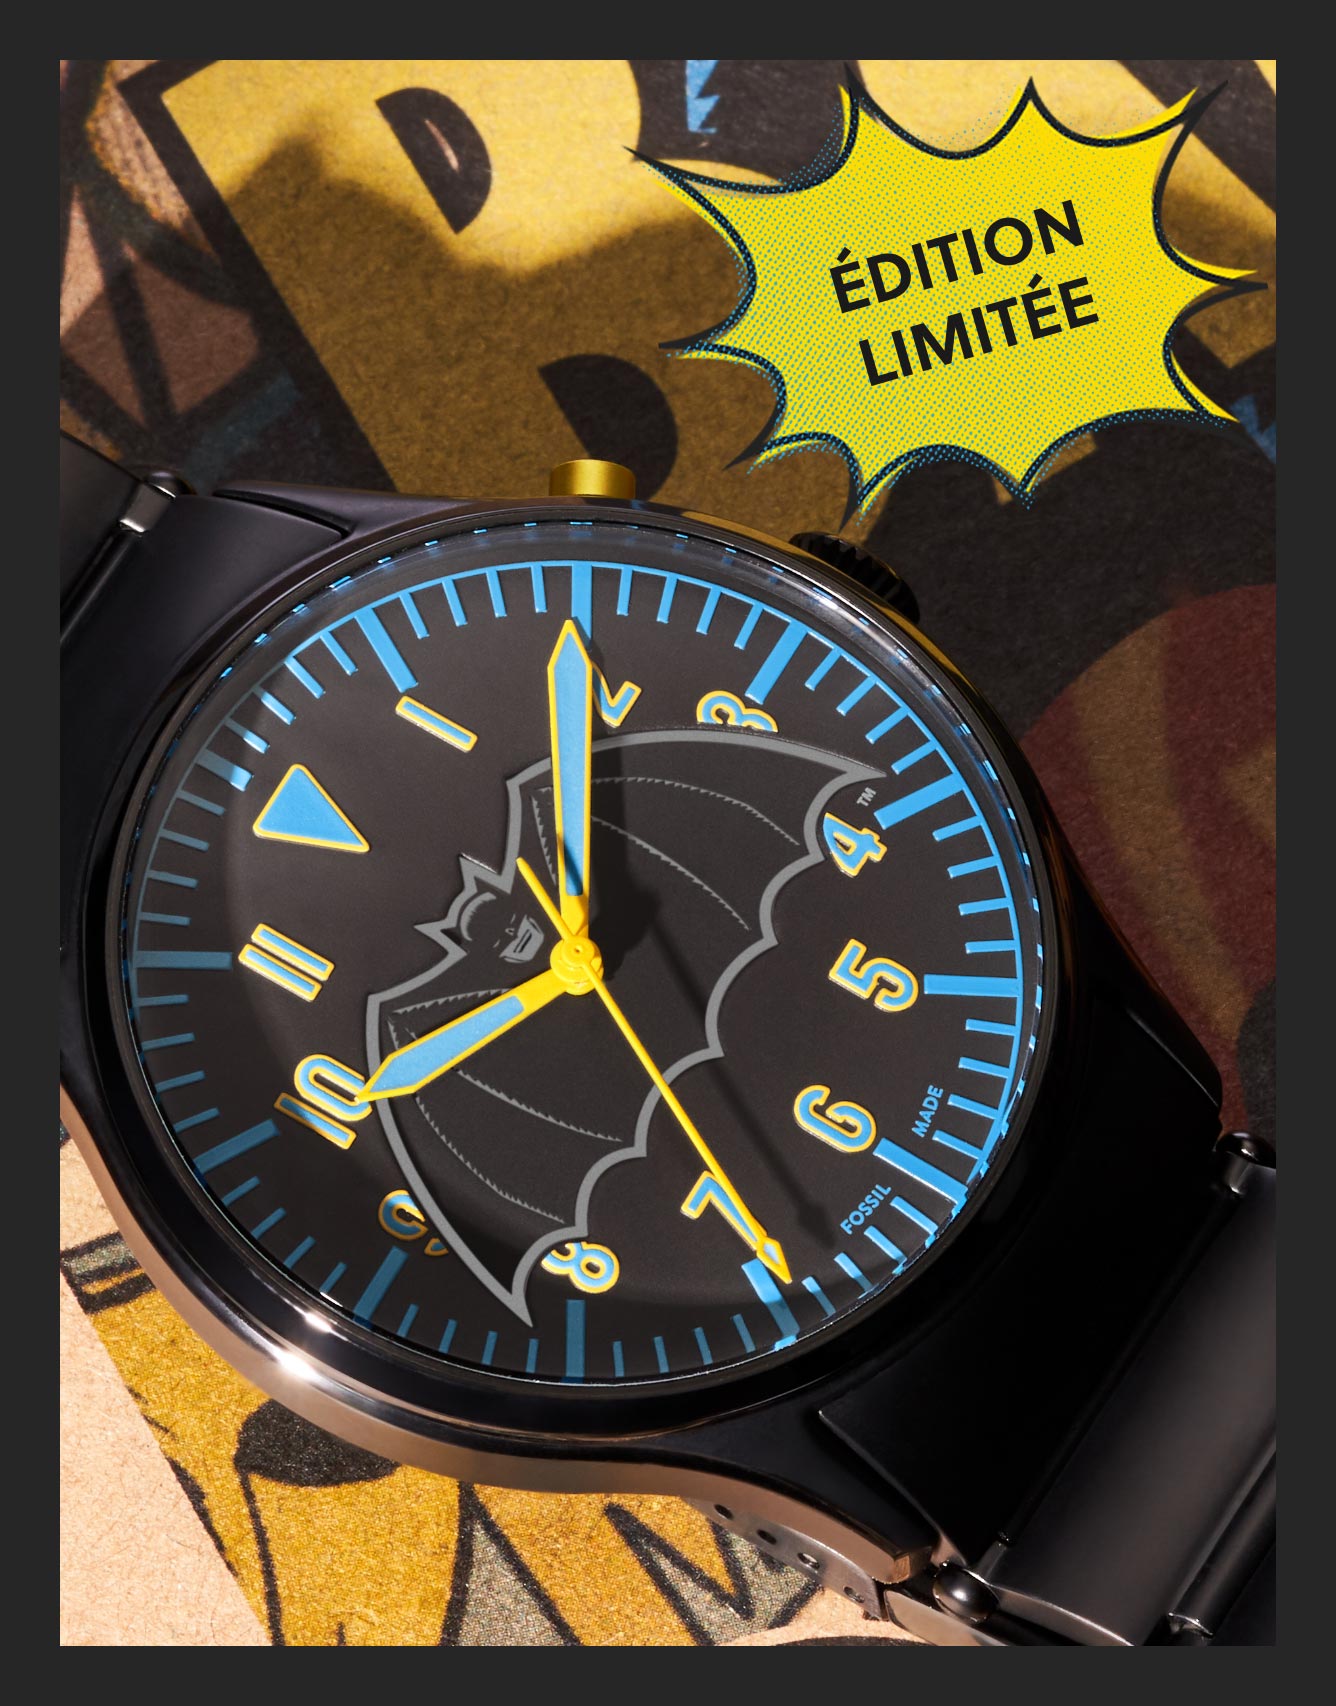 Le logo Batman by Fossil avec une montre Batman en édition limitée en cuir, noire.